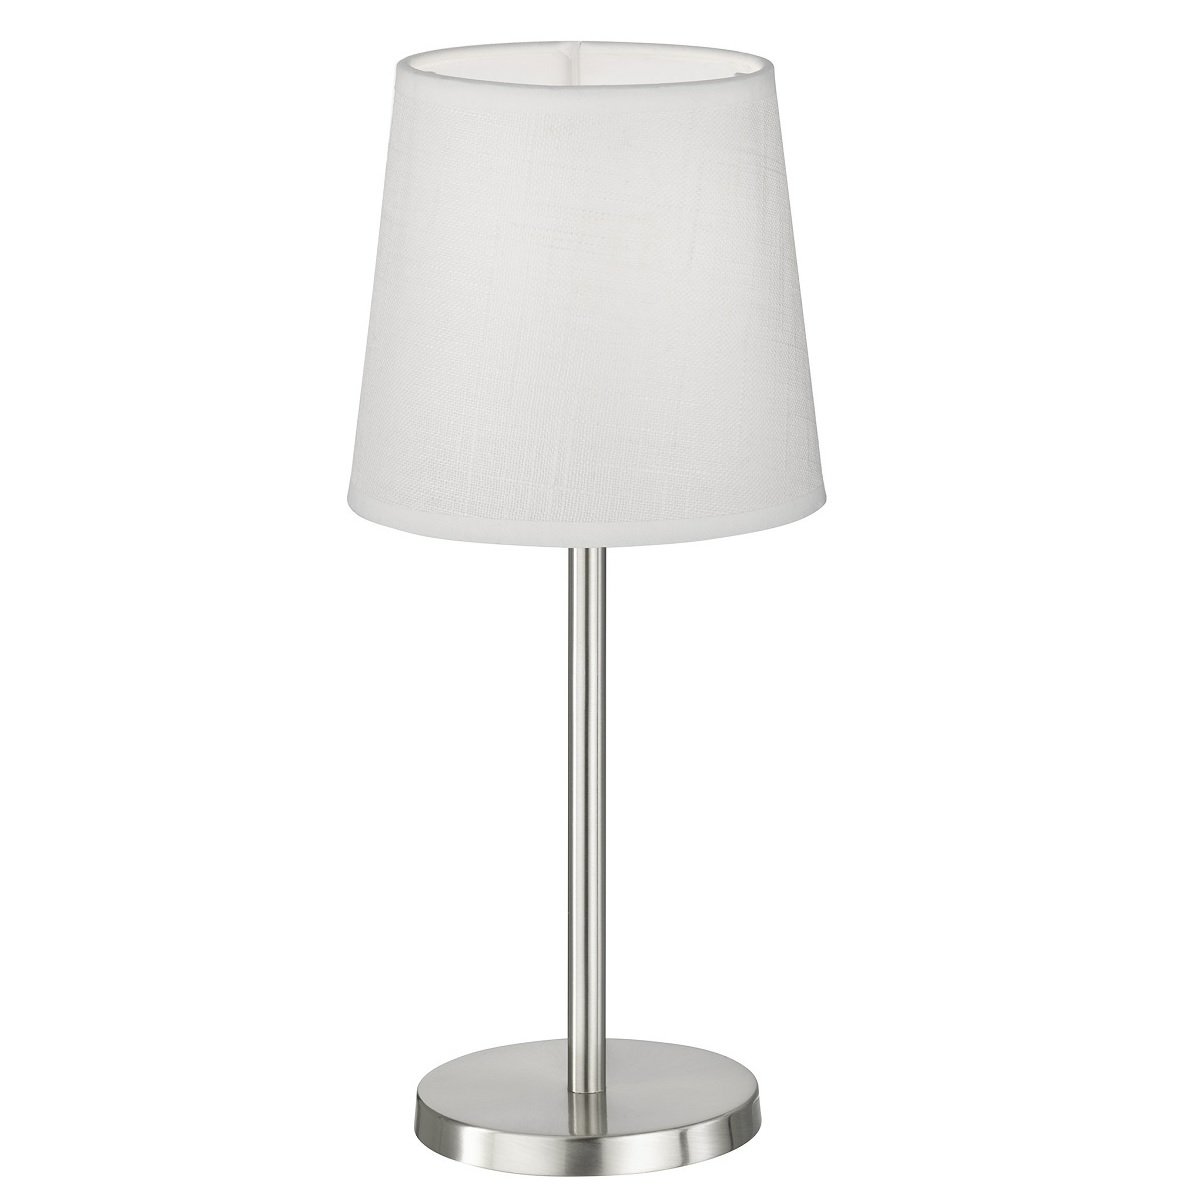 FHL easy No. kaufen Tischleuchte & --> nickelfarben matt Lampen im Leuchten Eve 850103 weiß Shop 30cm E14 online